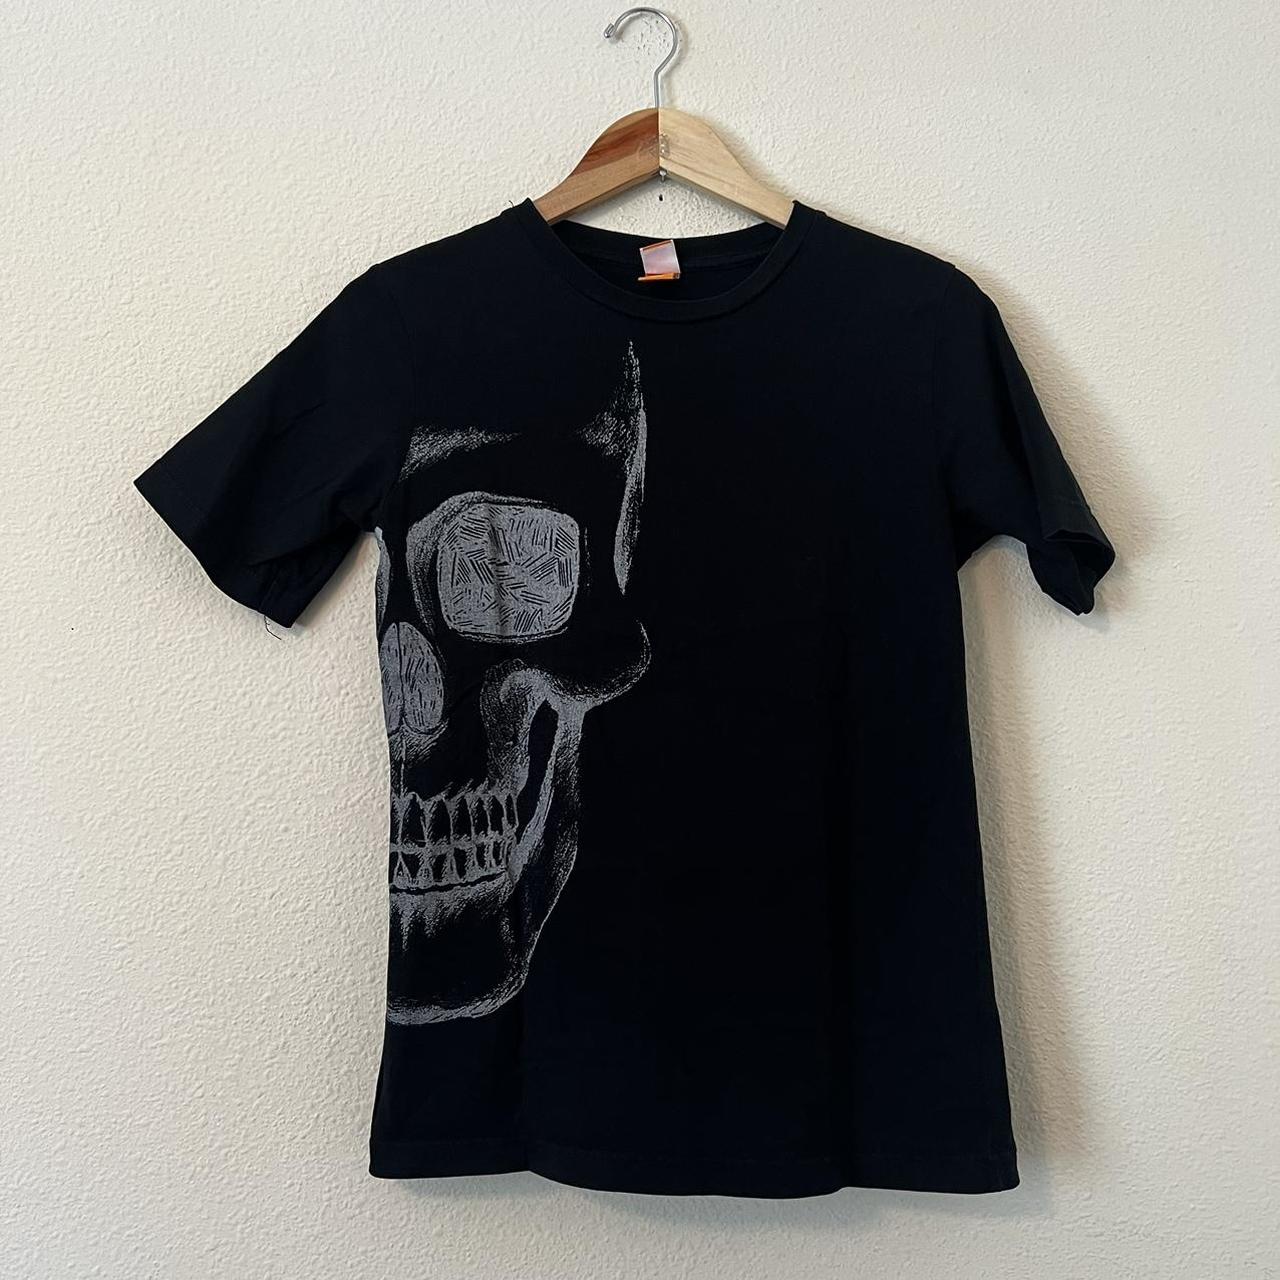 vintage punk skull t shirt Adult Size Large - Depop